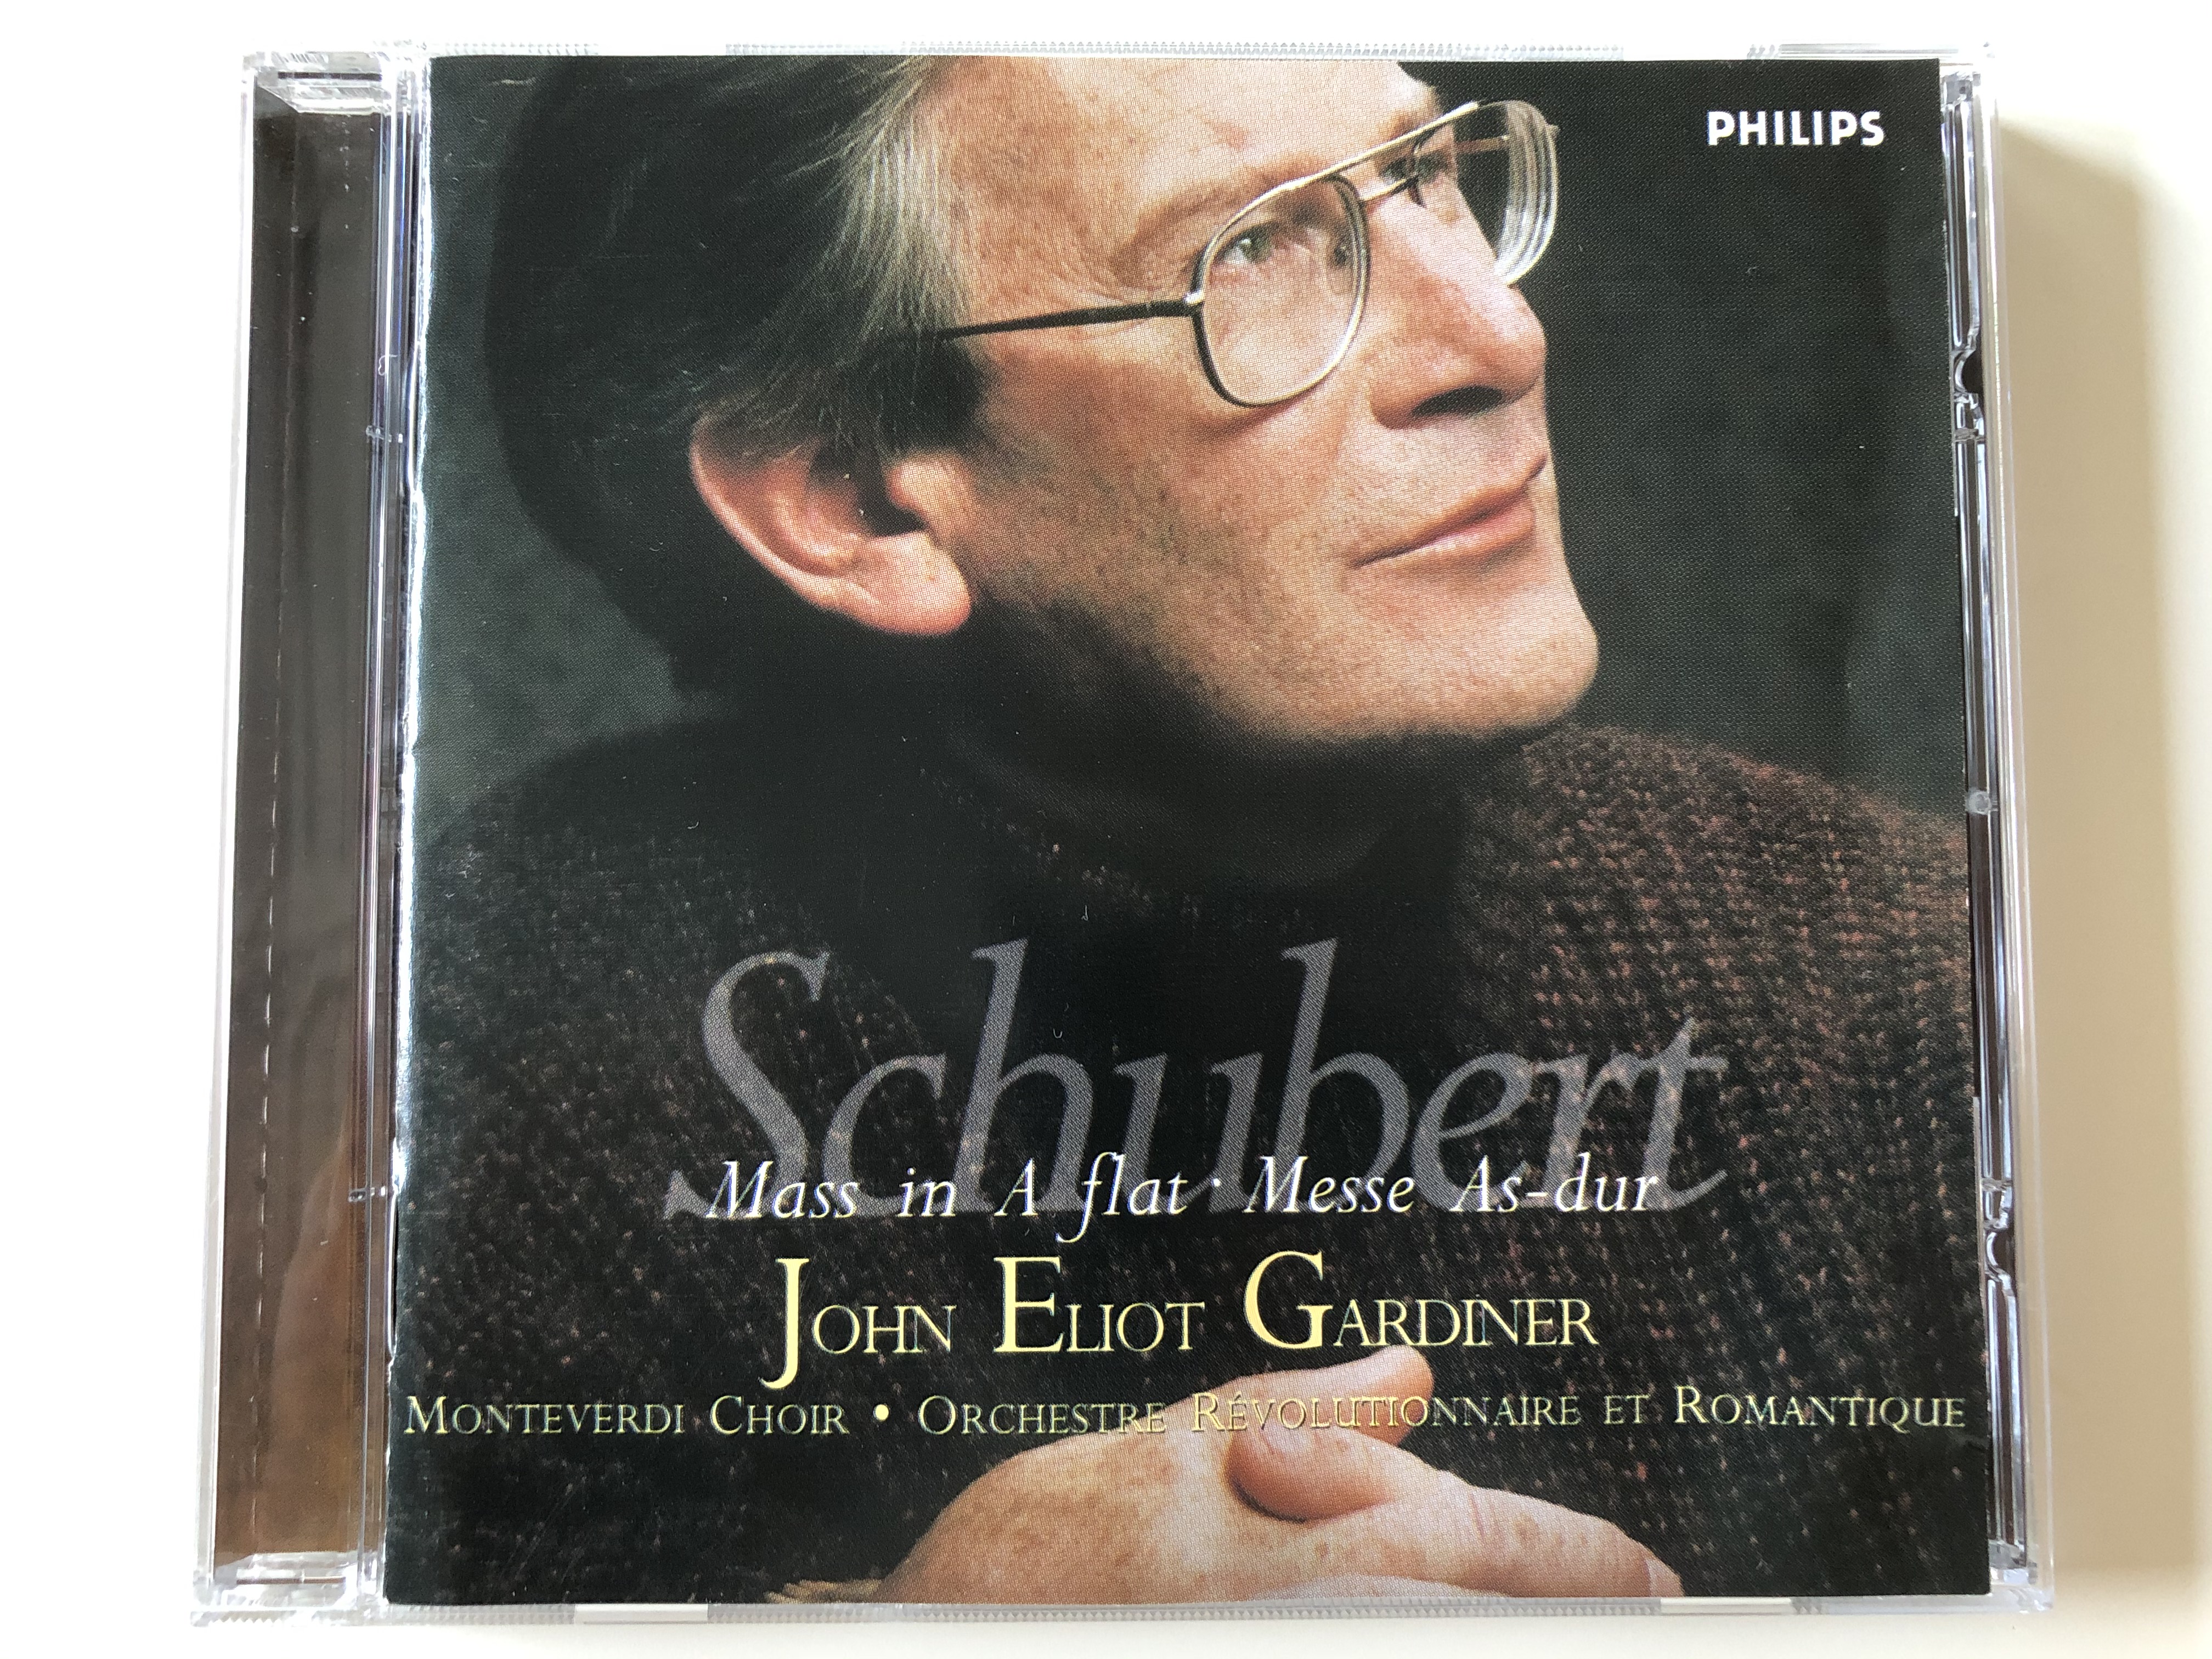 schubert-mass-in-a-flat-messe-as-dur-john-eliot-gardiner-monteverdi-choir-orchestre-revolutionnaire-et-romantique-philips-audio-cd-1999-456-578-2-1-.jpg